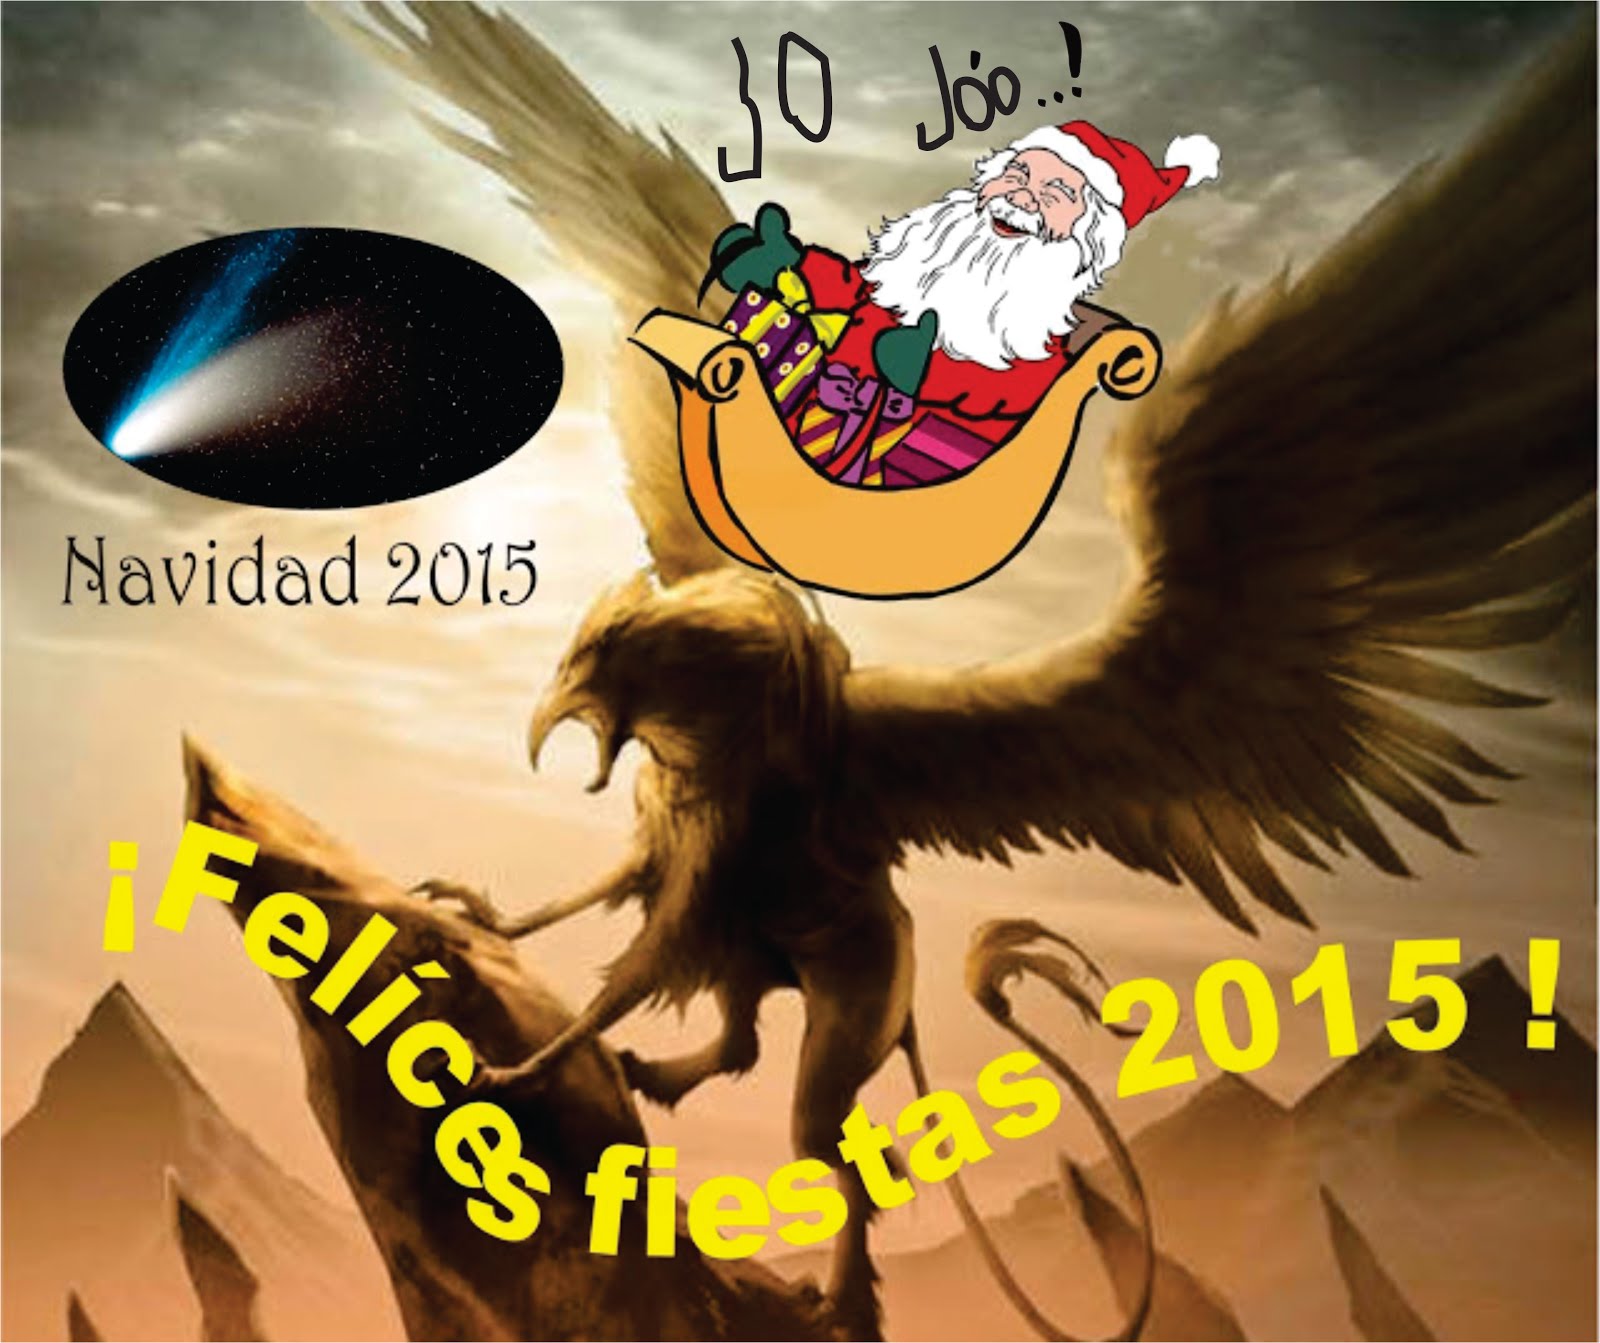 ¡FELÍCES FIESTAS 2015!